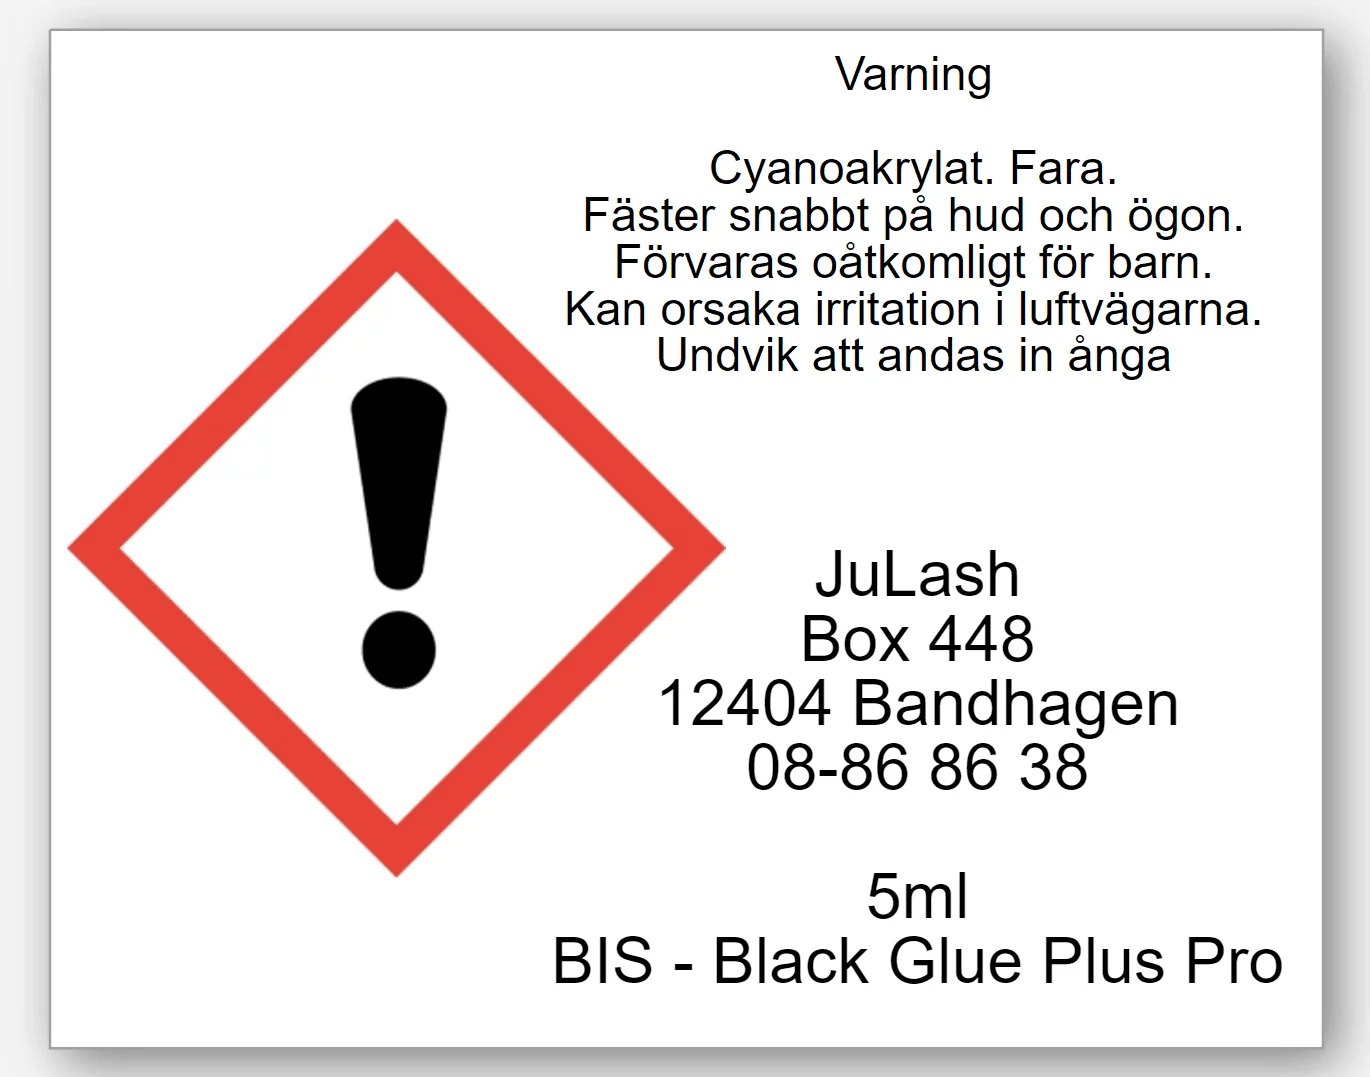 BIS - Black Glue Plus Pro